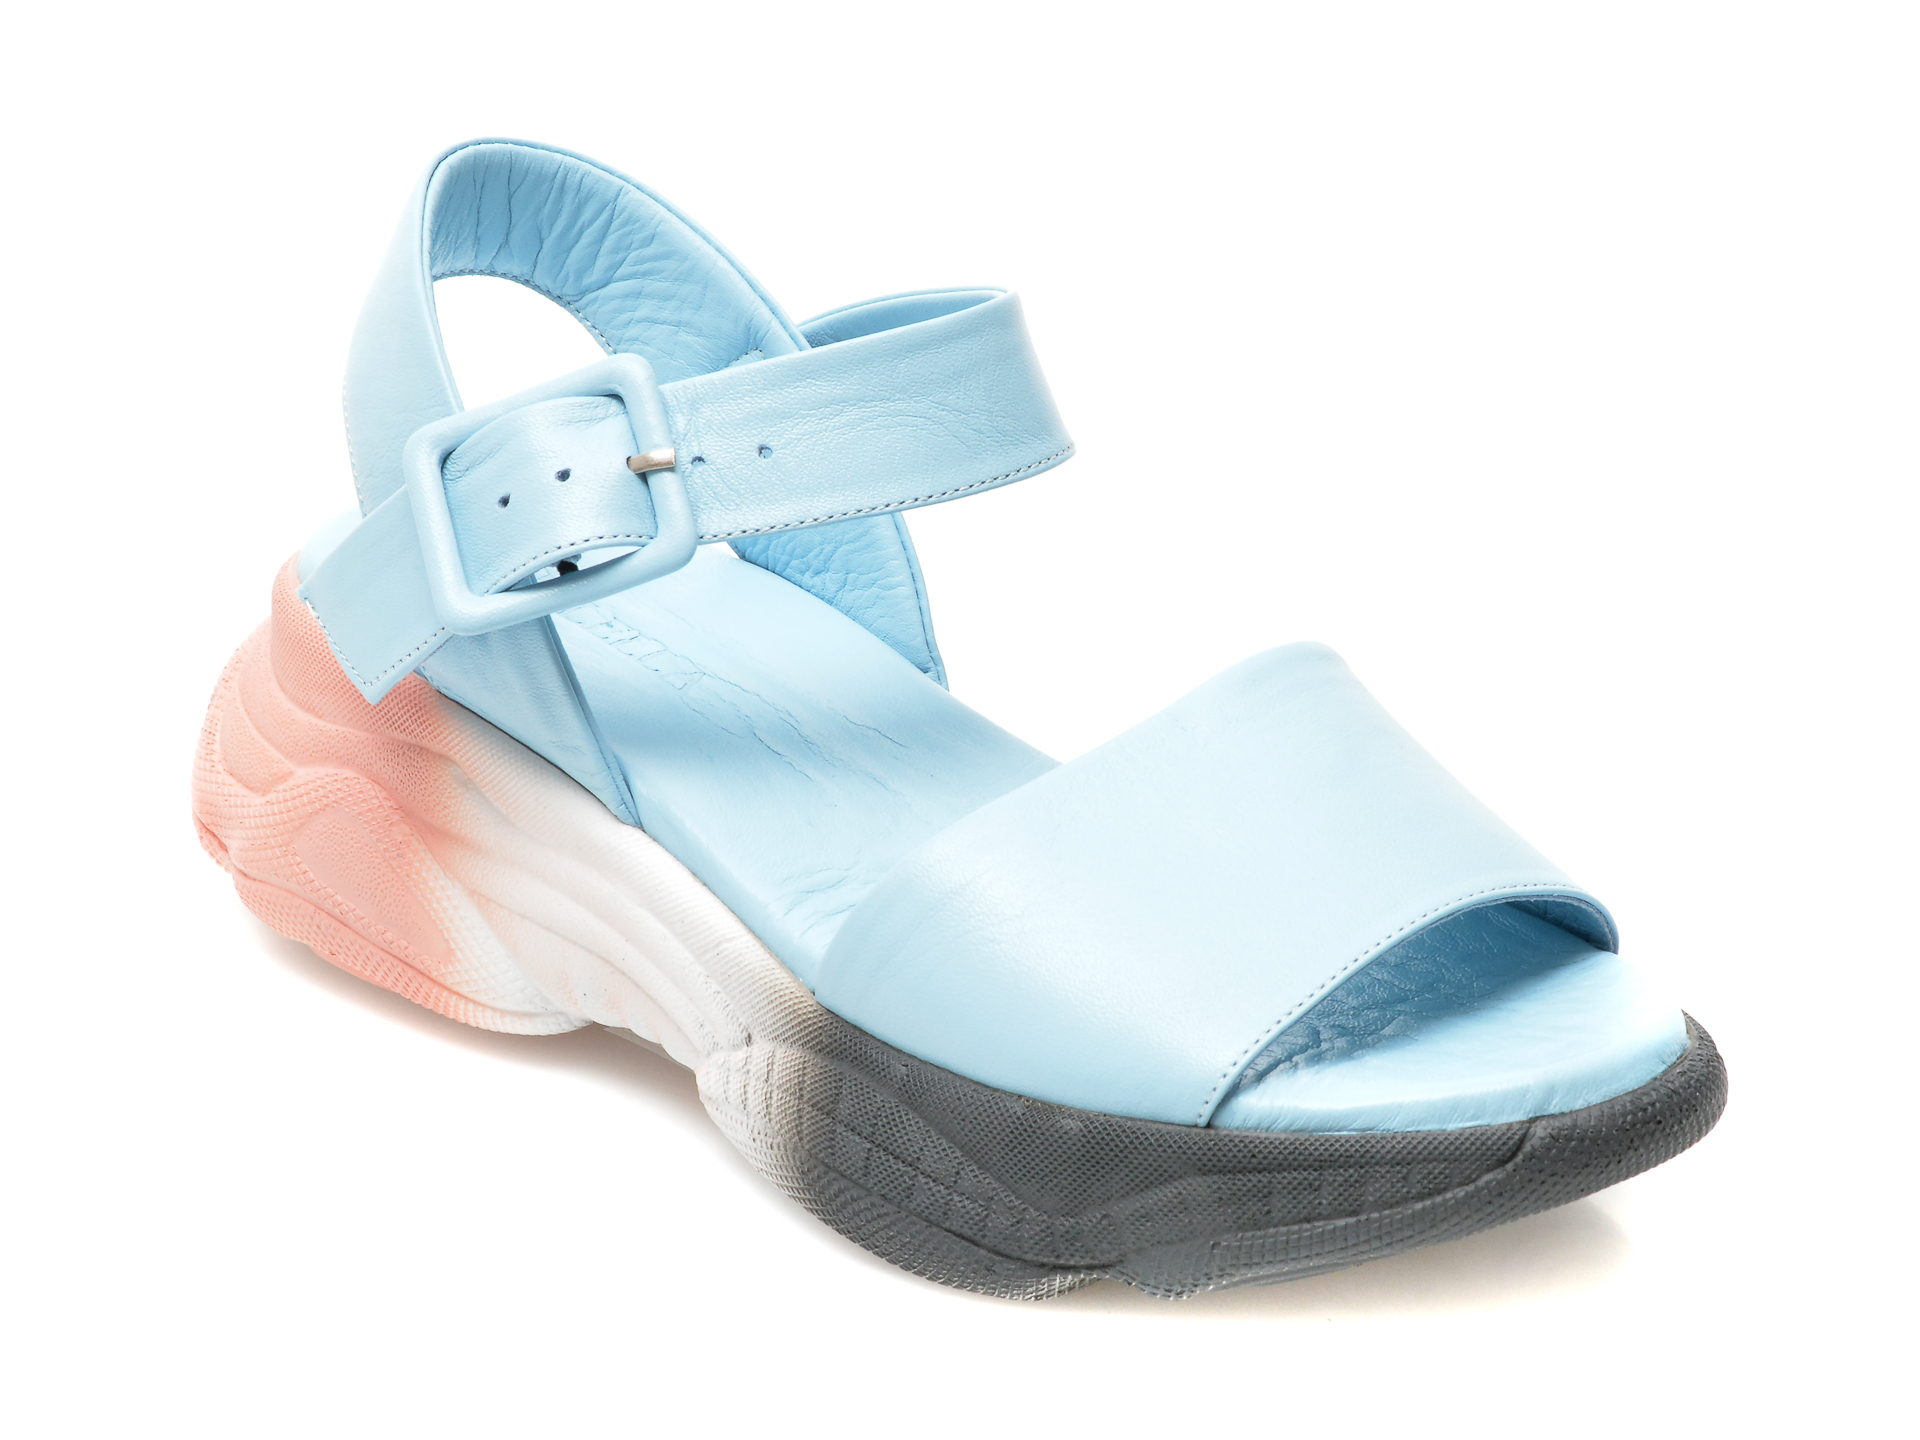 Sandale LOLILELLA albastru deschis, 1581078, din piele naturala